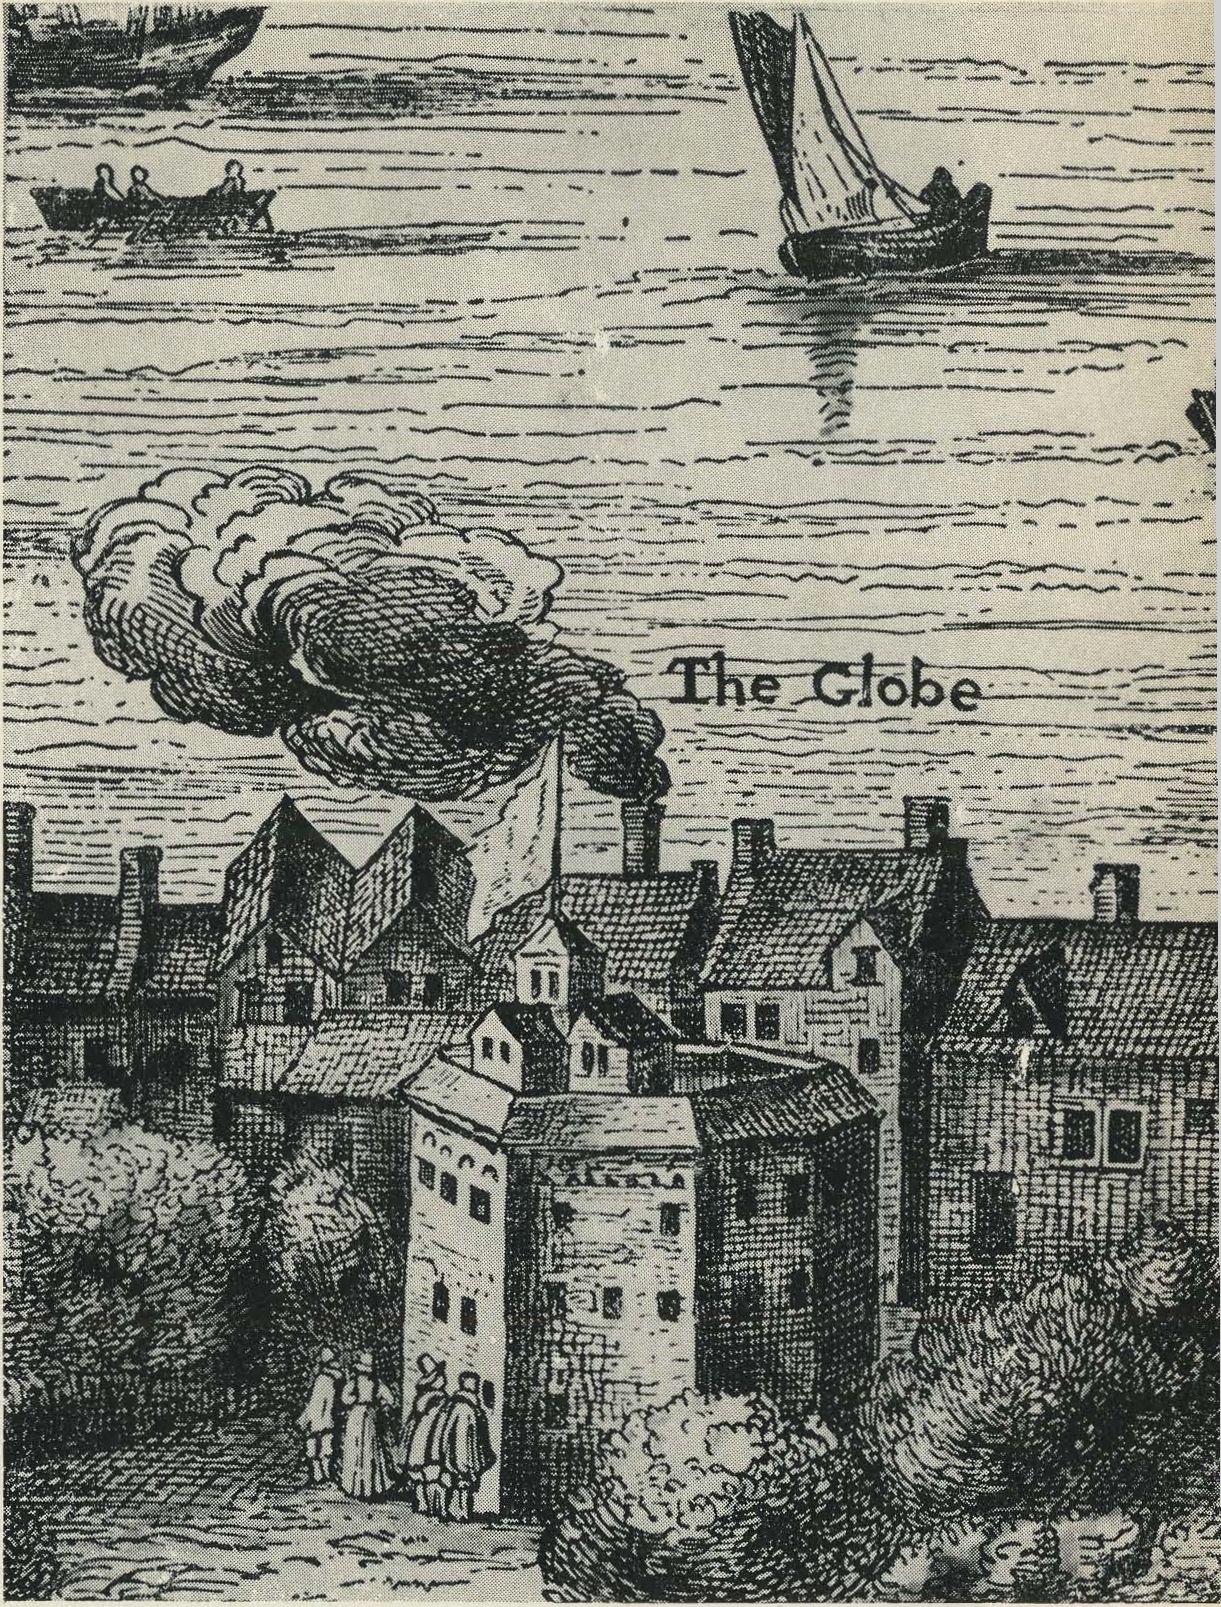 Внешний вид театра «Глобус». Увеличенная деталь с карты Лондона времен Шекспира